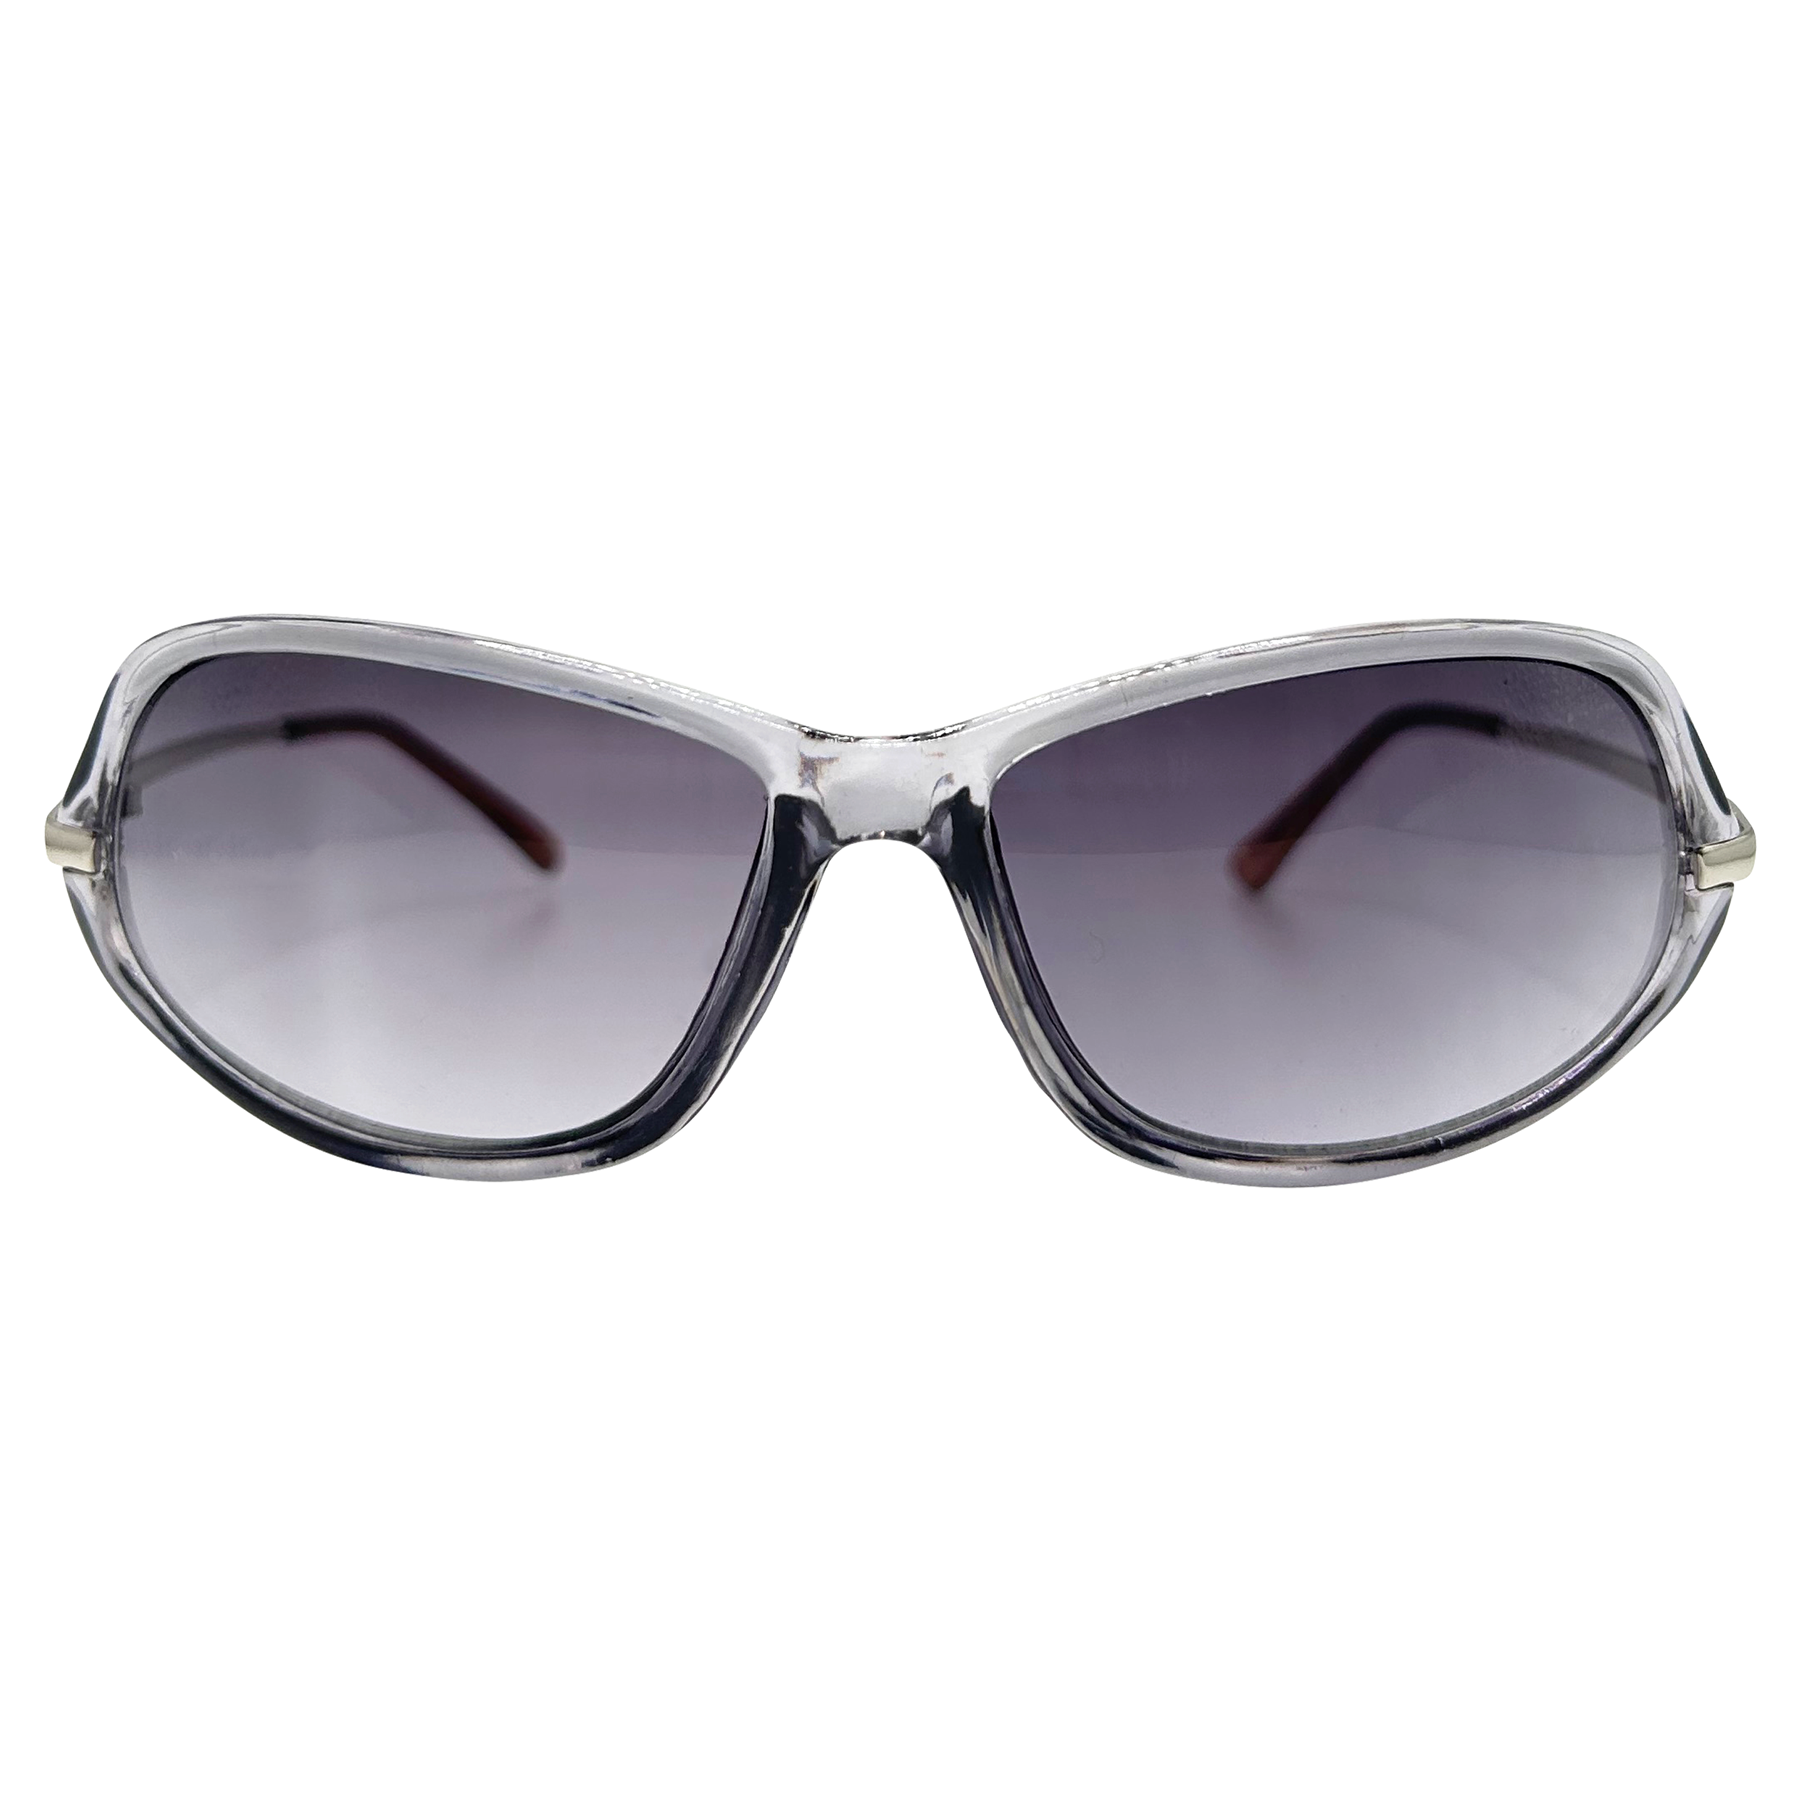 GINGER 90s Sunglasses